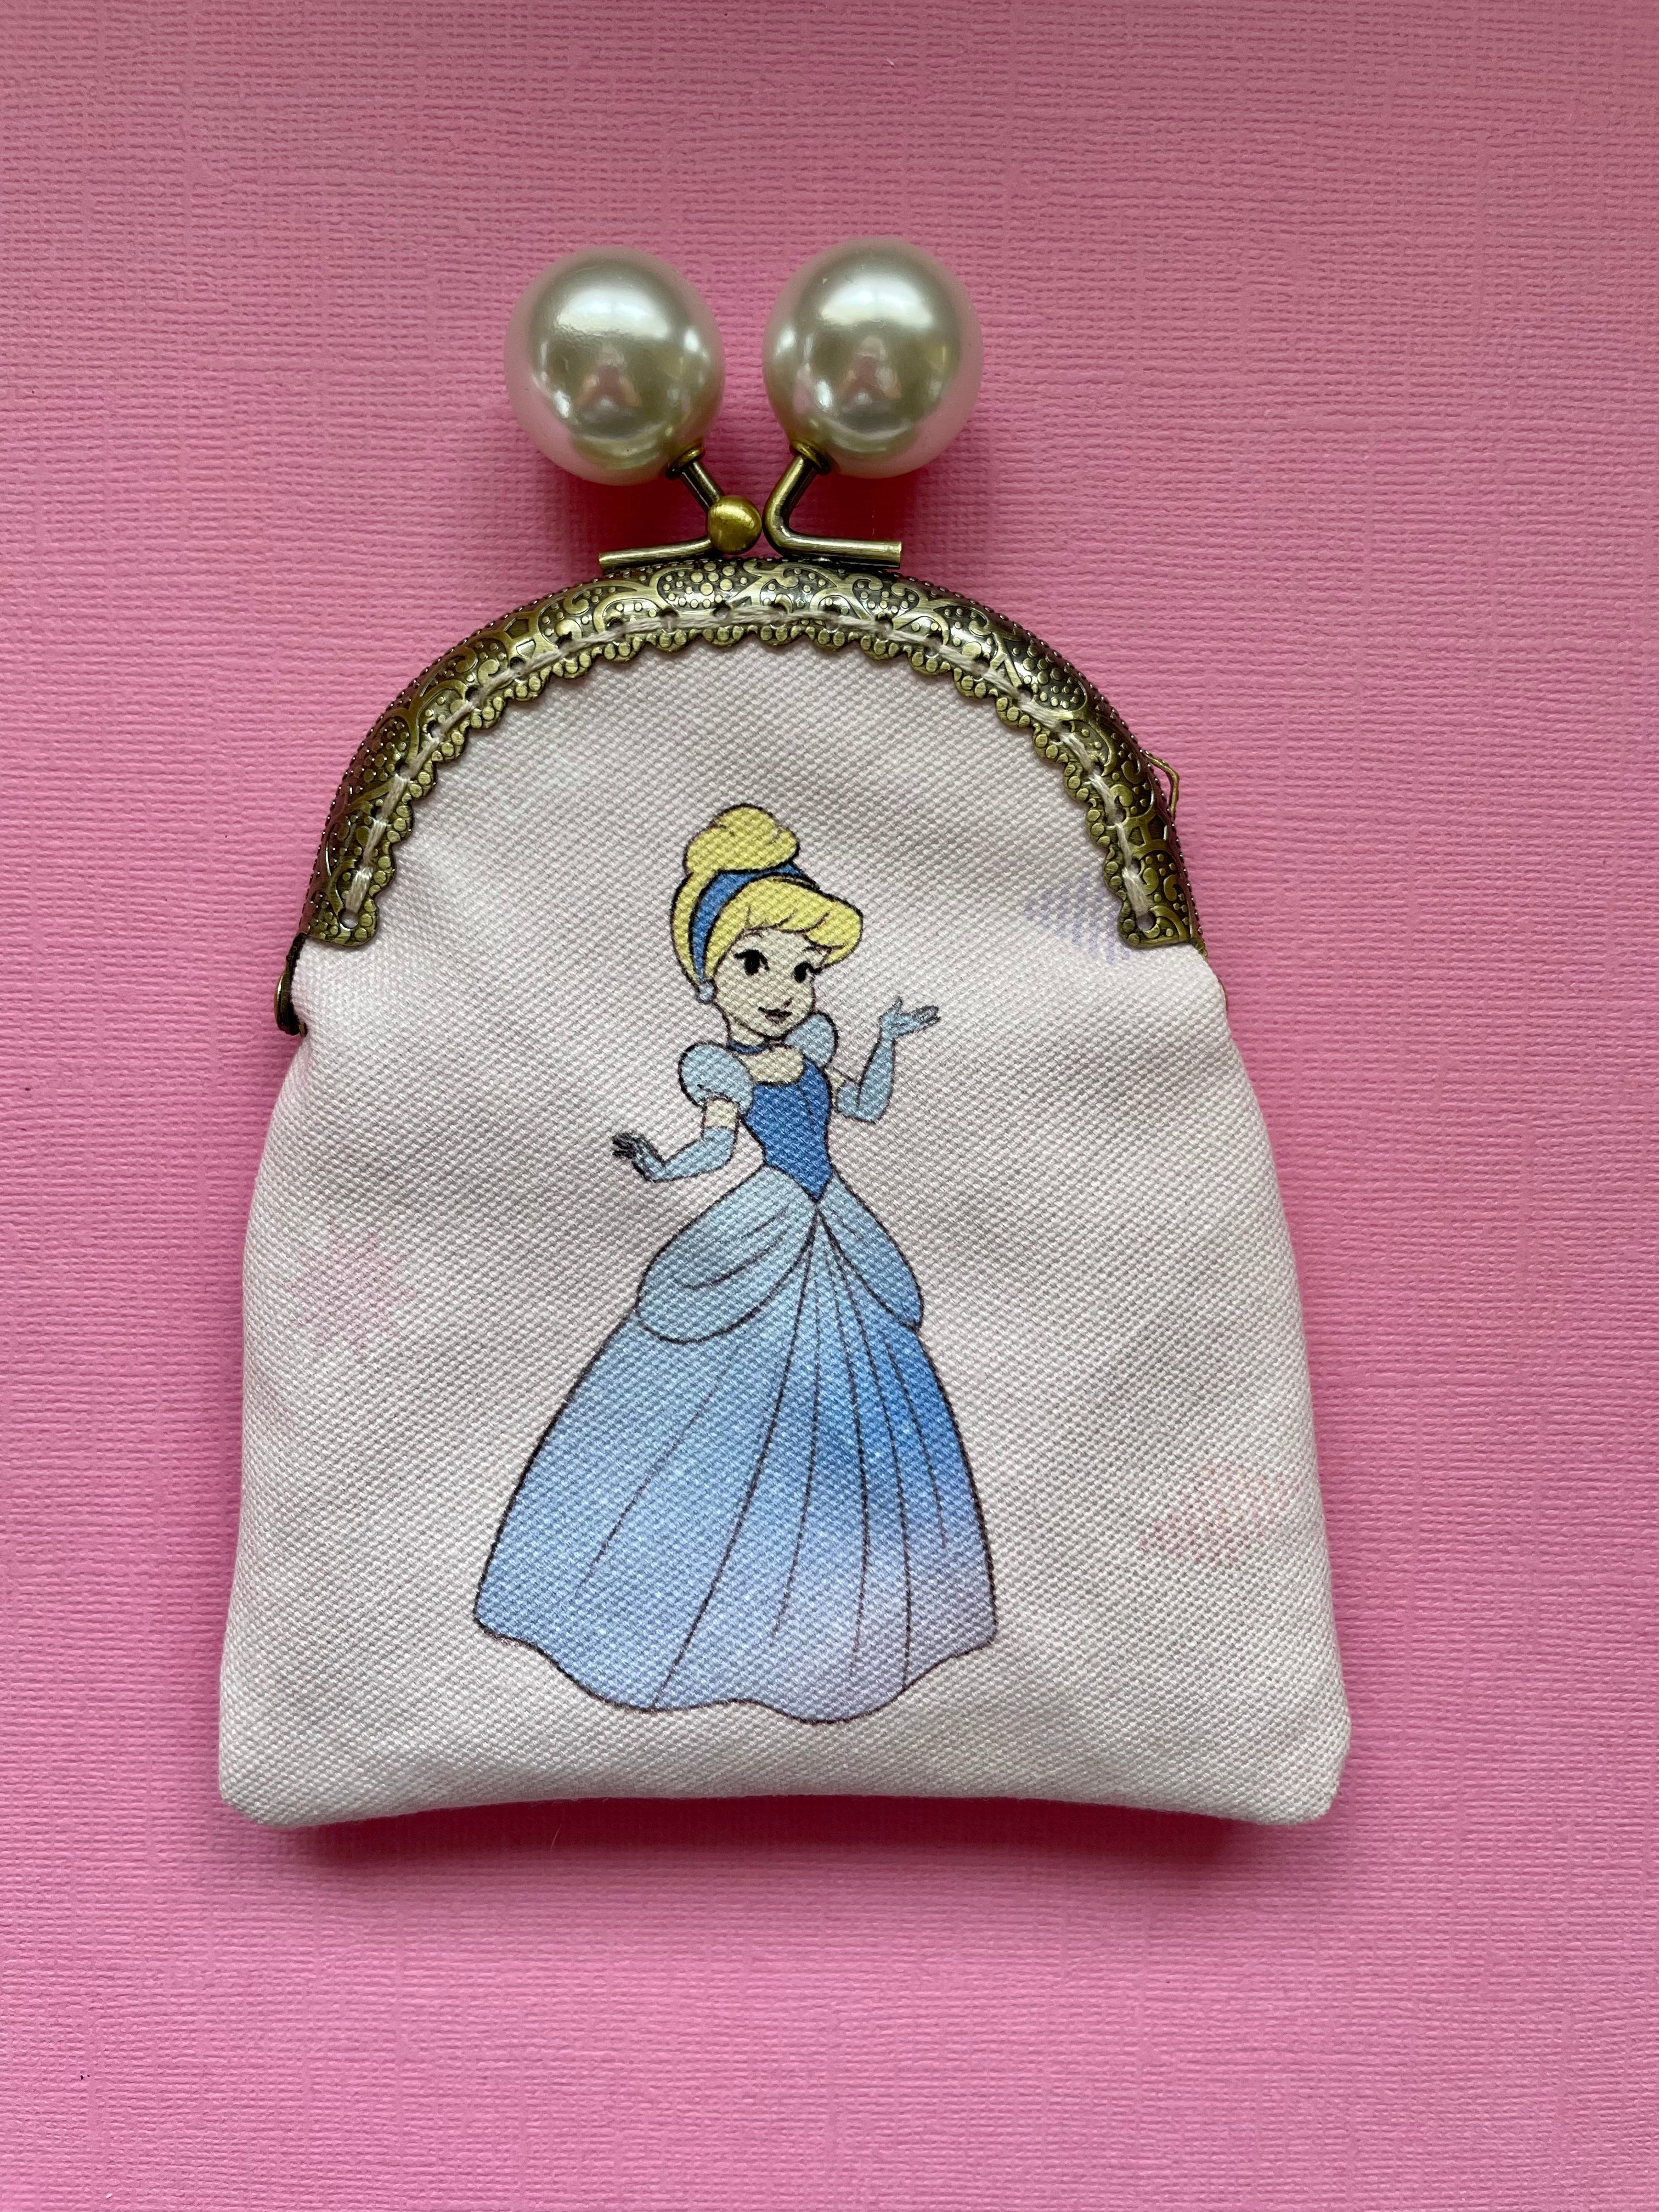 Danielle Nicole Disneyland Sleeping Beauty Castle Bag Purse Cross Body BNWT  | eBay